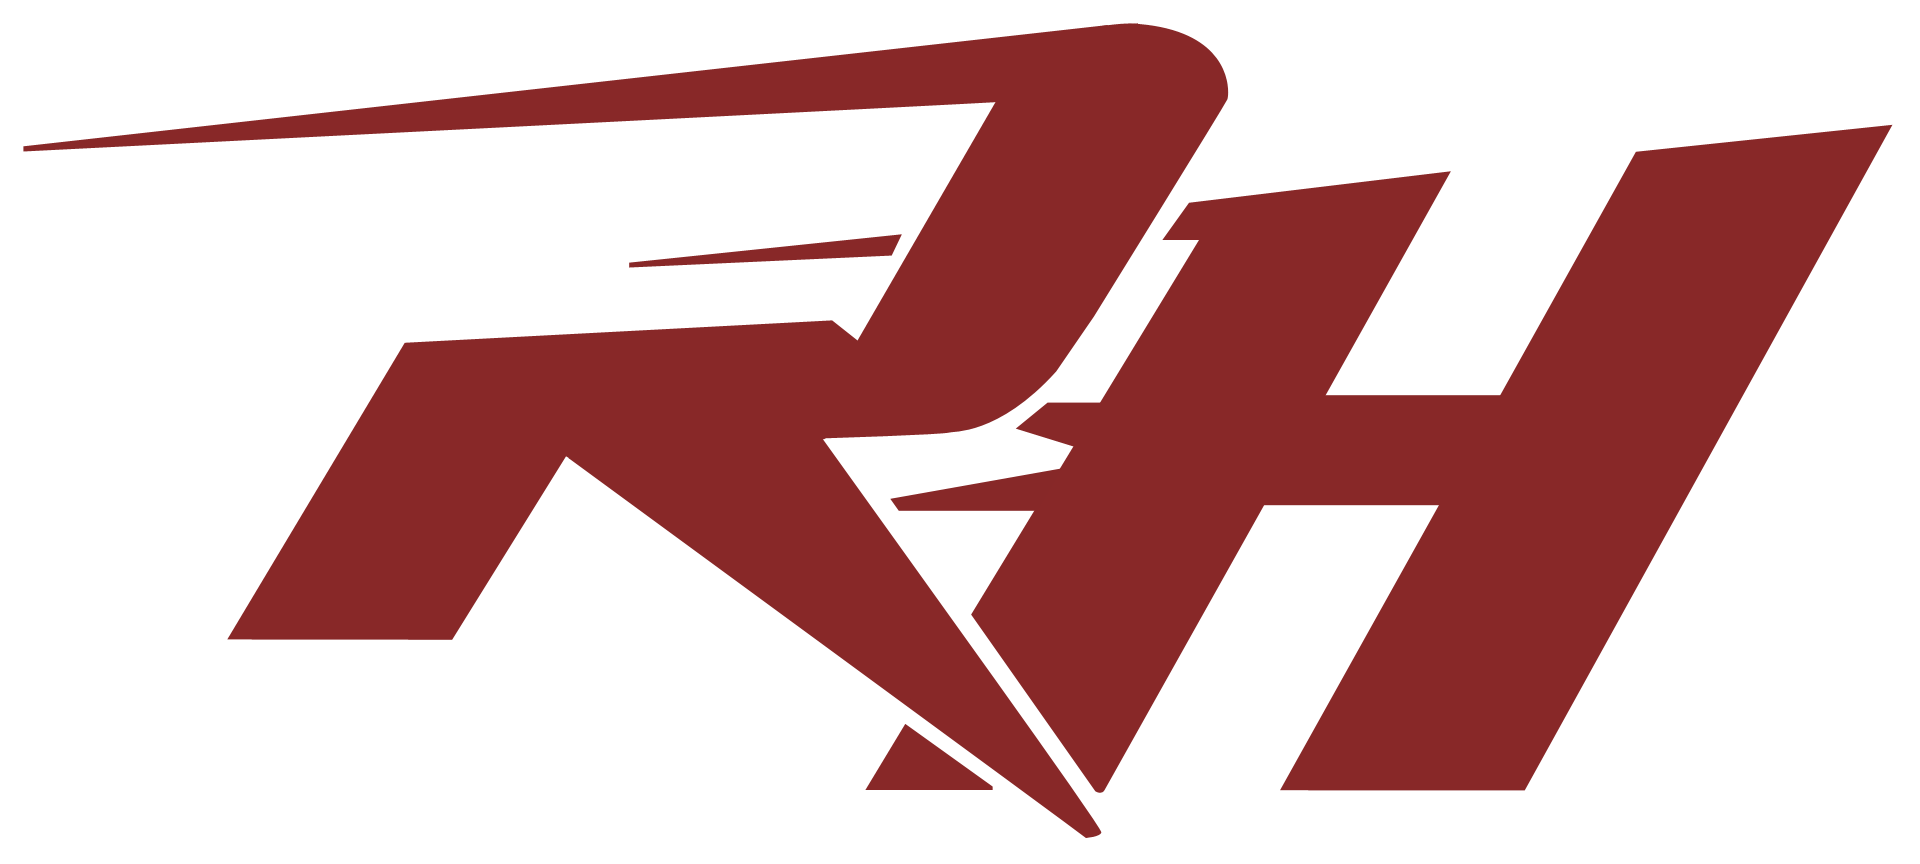 RH Logo - Rh logo png PNG Image